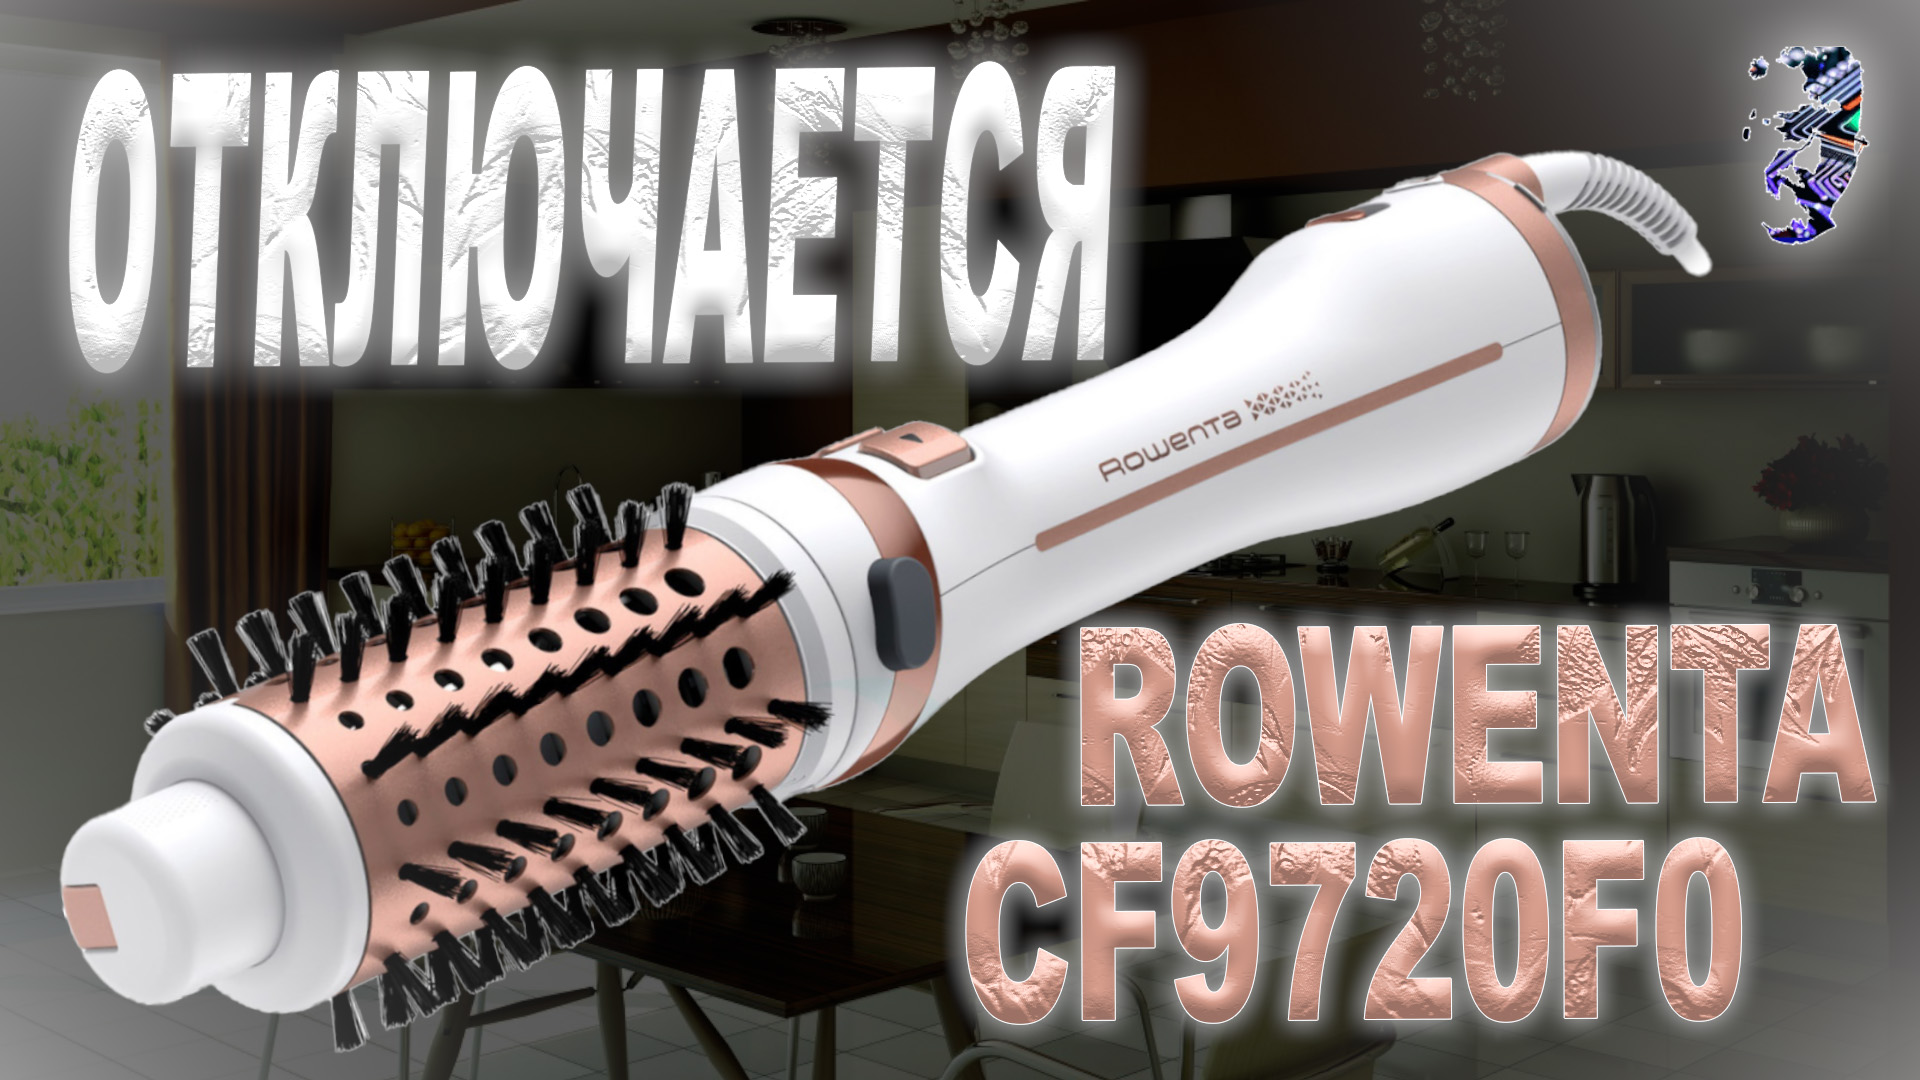 Ремонт фен-щётки Rowenta CF2720F0, сразу отключается